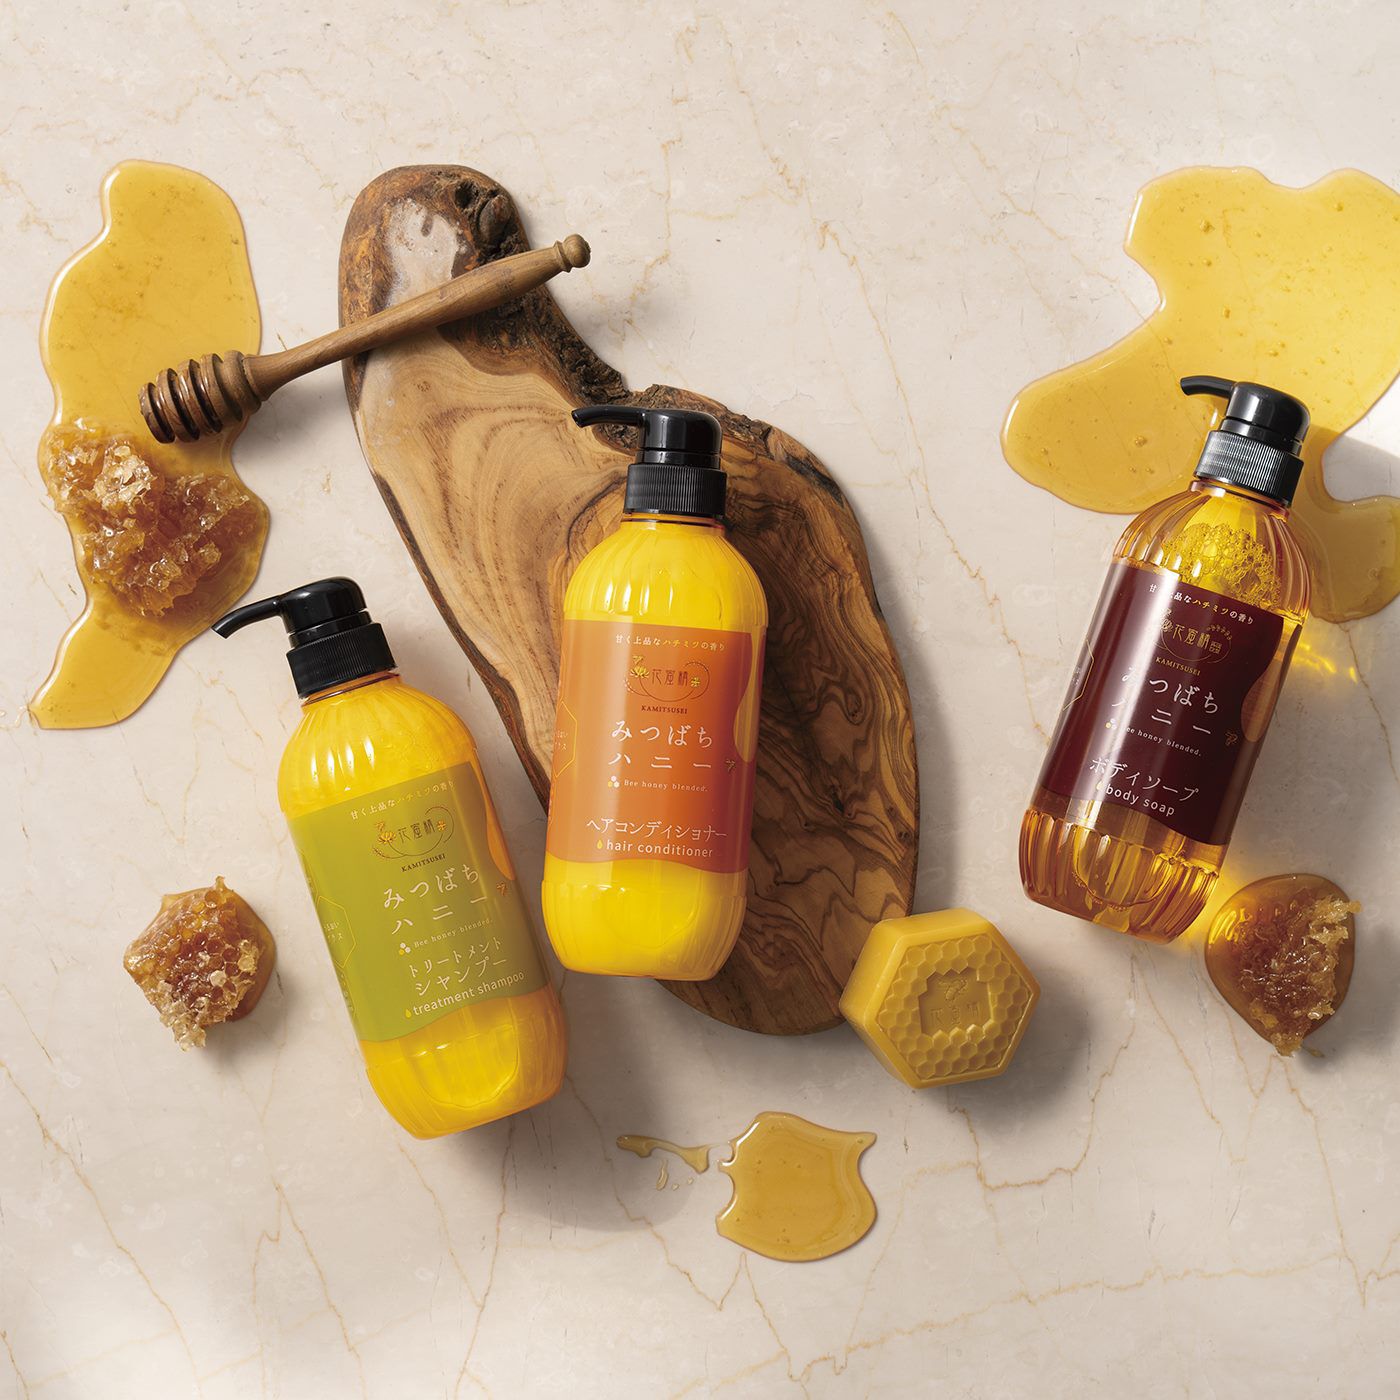 BEAUTY PROJECT|花蜜精　みつばちハニー　トリートメントシャンプーの会|肌や髪をしっとりとした質感に導いてくれる花蜜精シリーズ。ぜひお試しください。